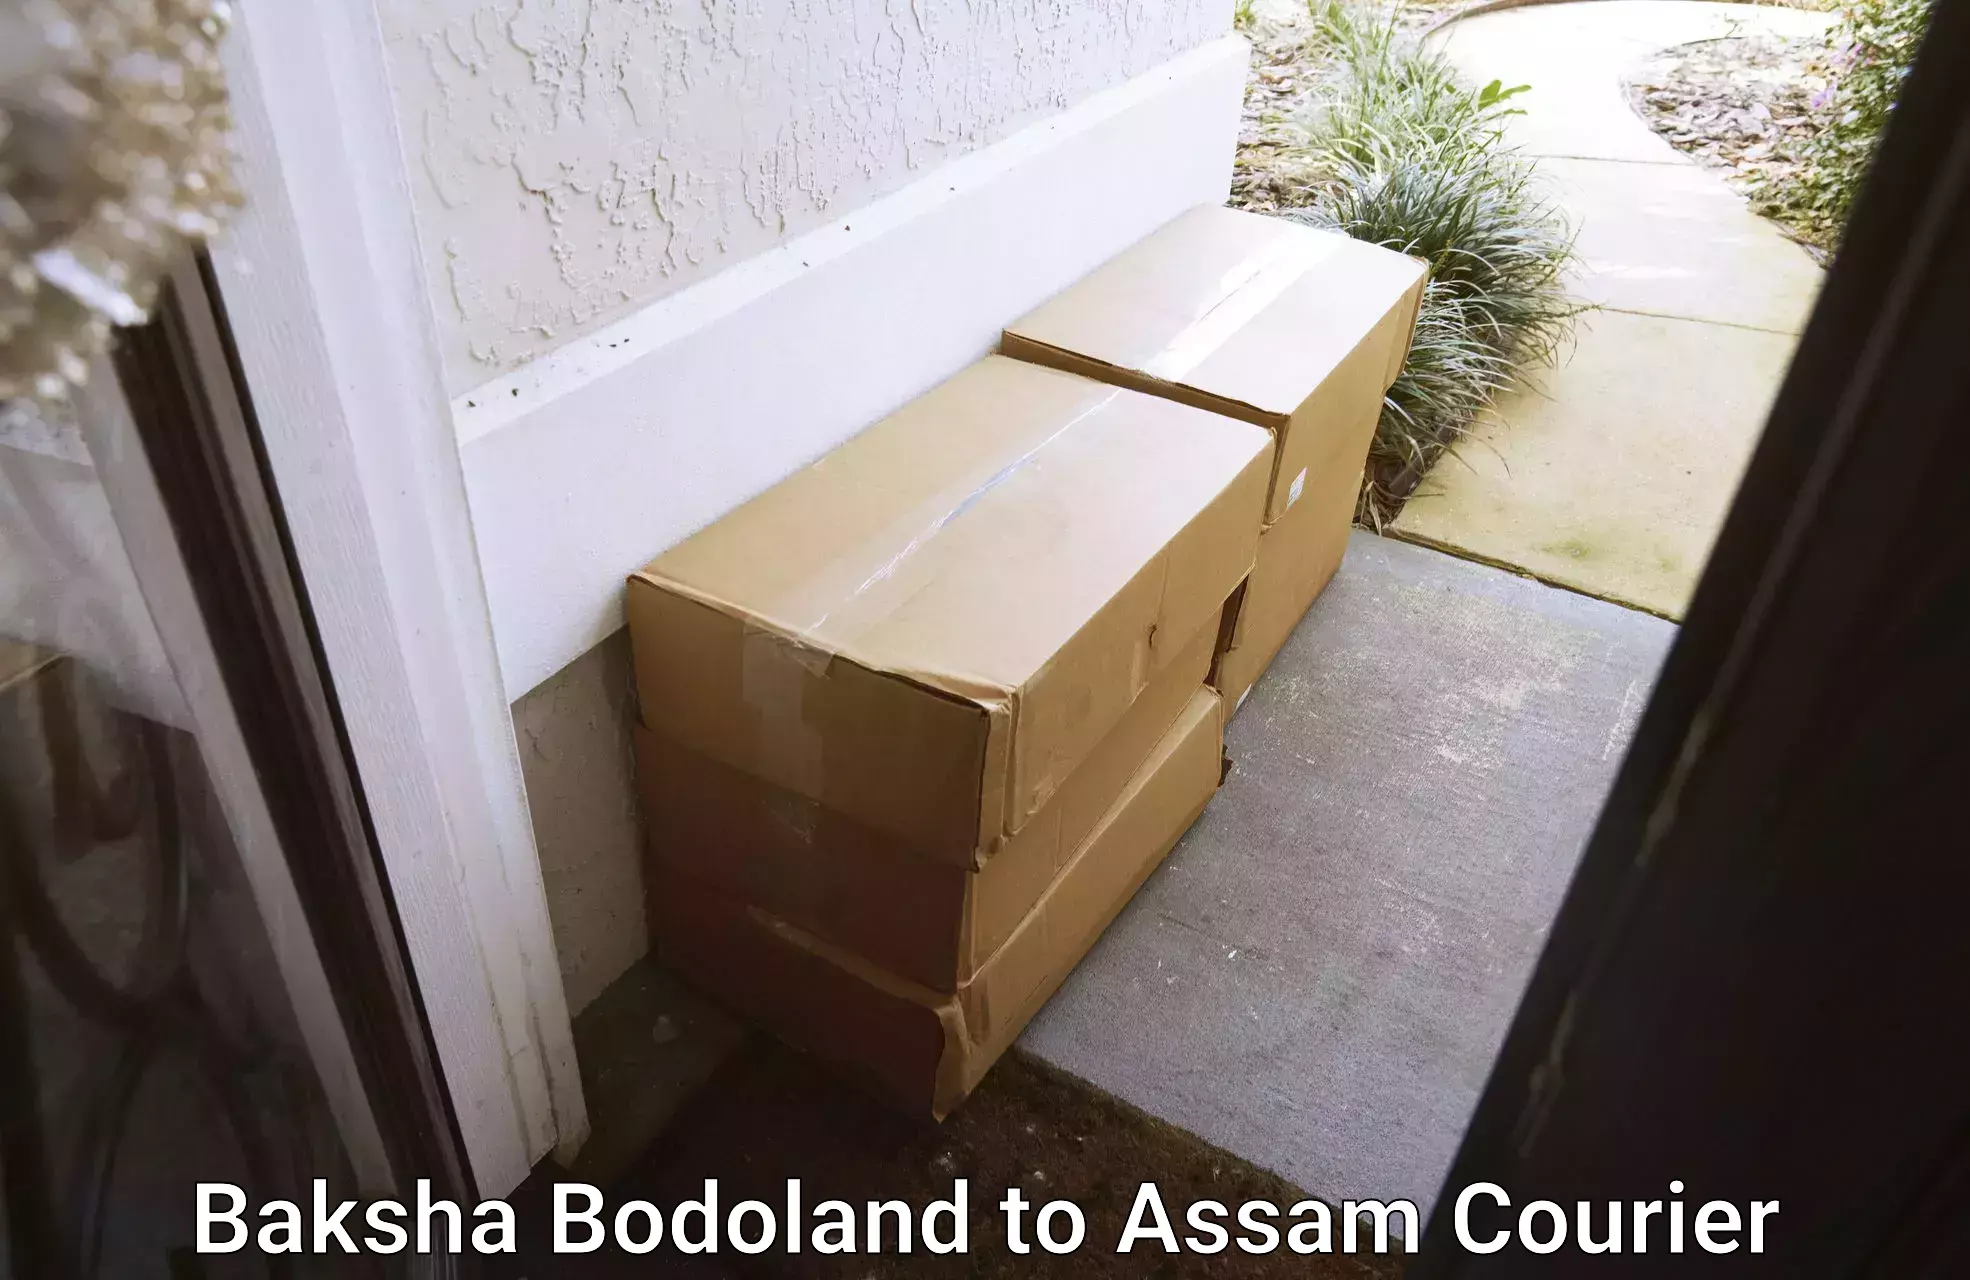 Express logistics service Baksha Bodoland to Baksha Bodoland